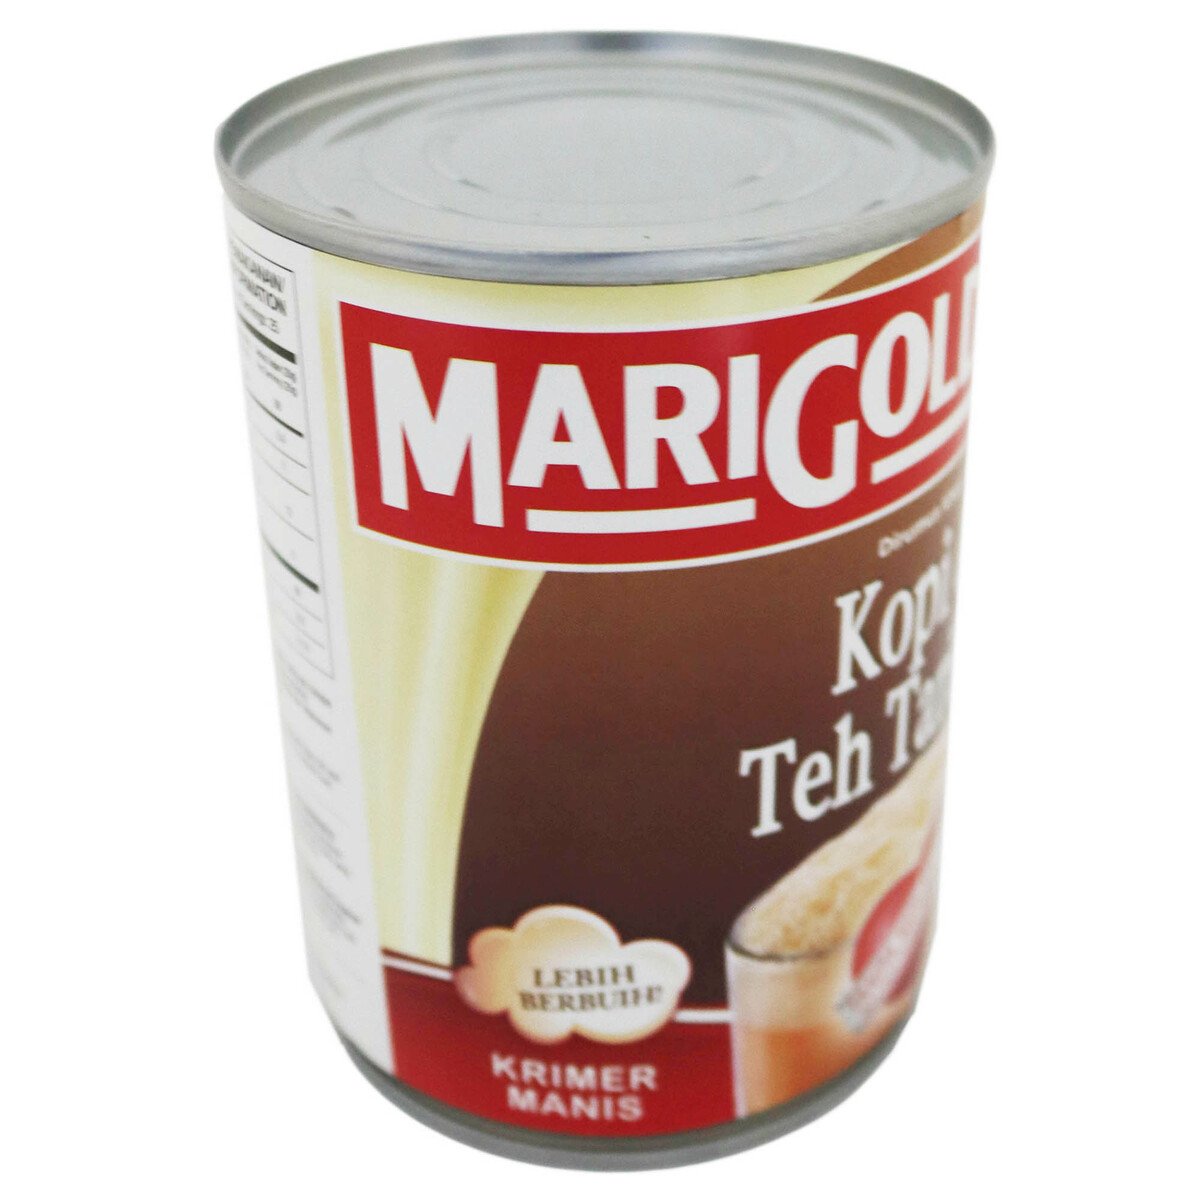 Marigold Kop & Tehtarik Sweetened Creamer 500g